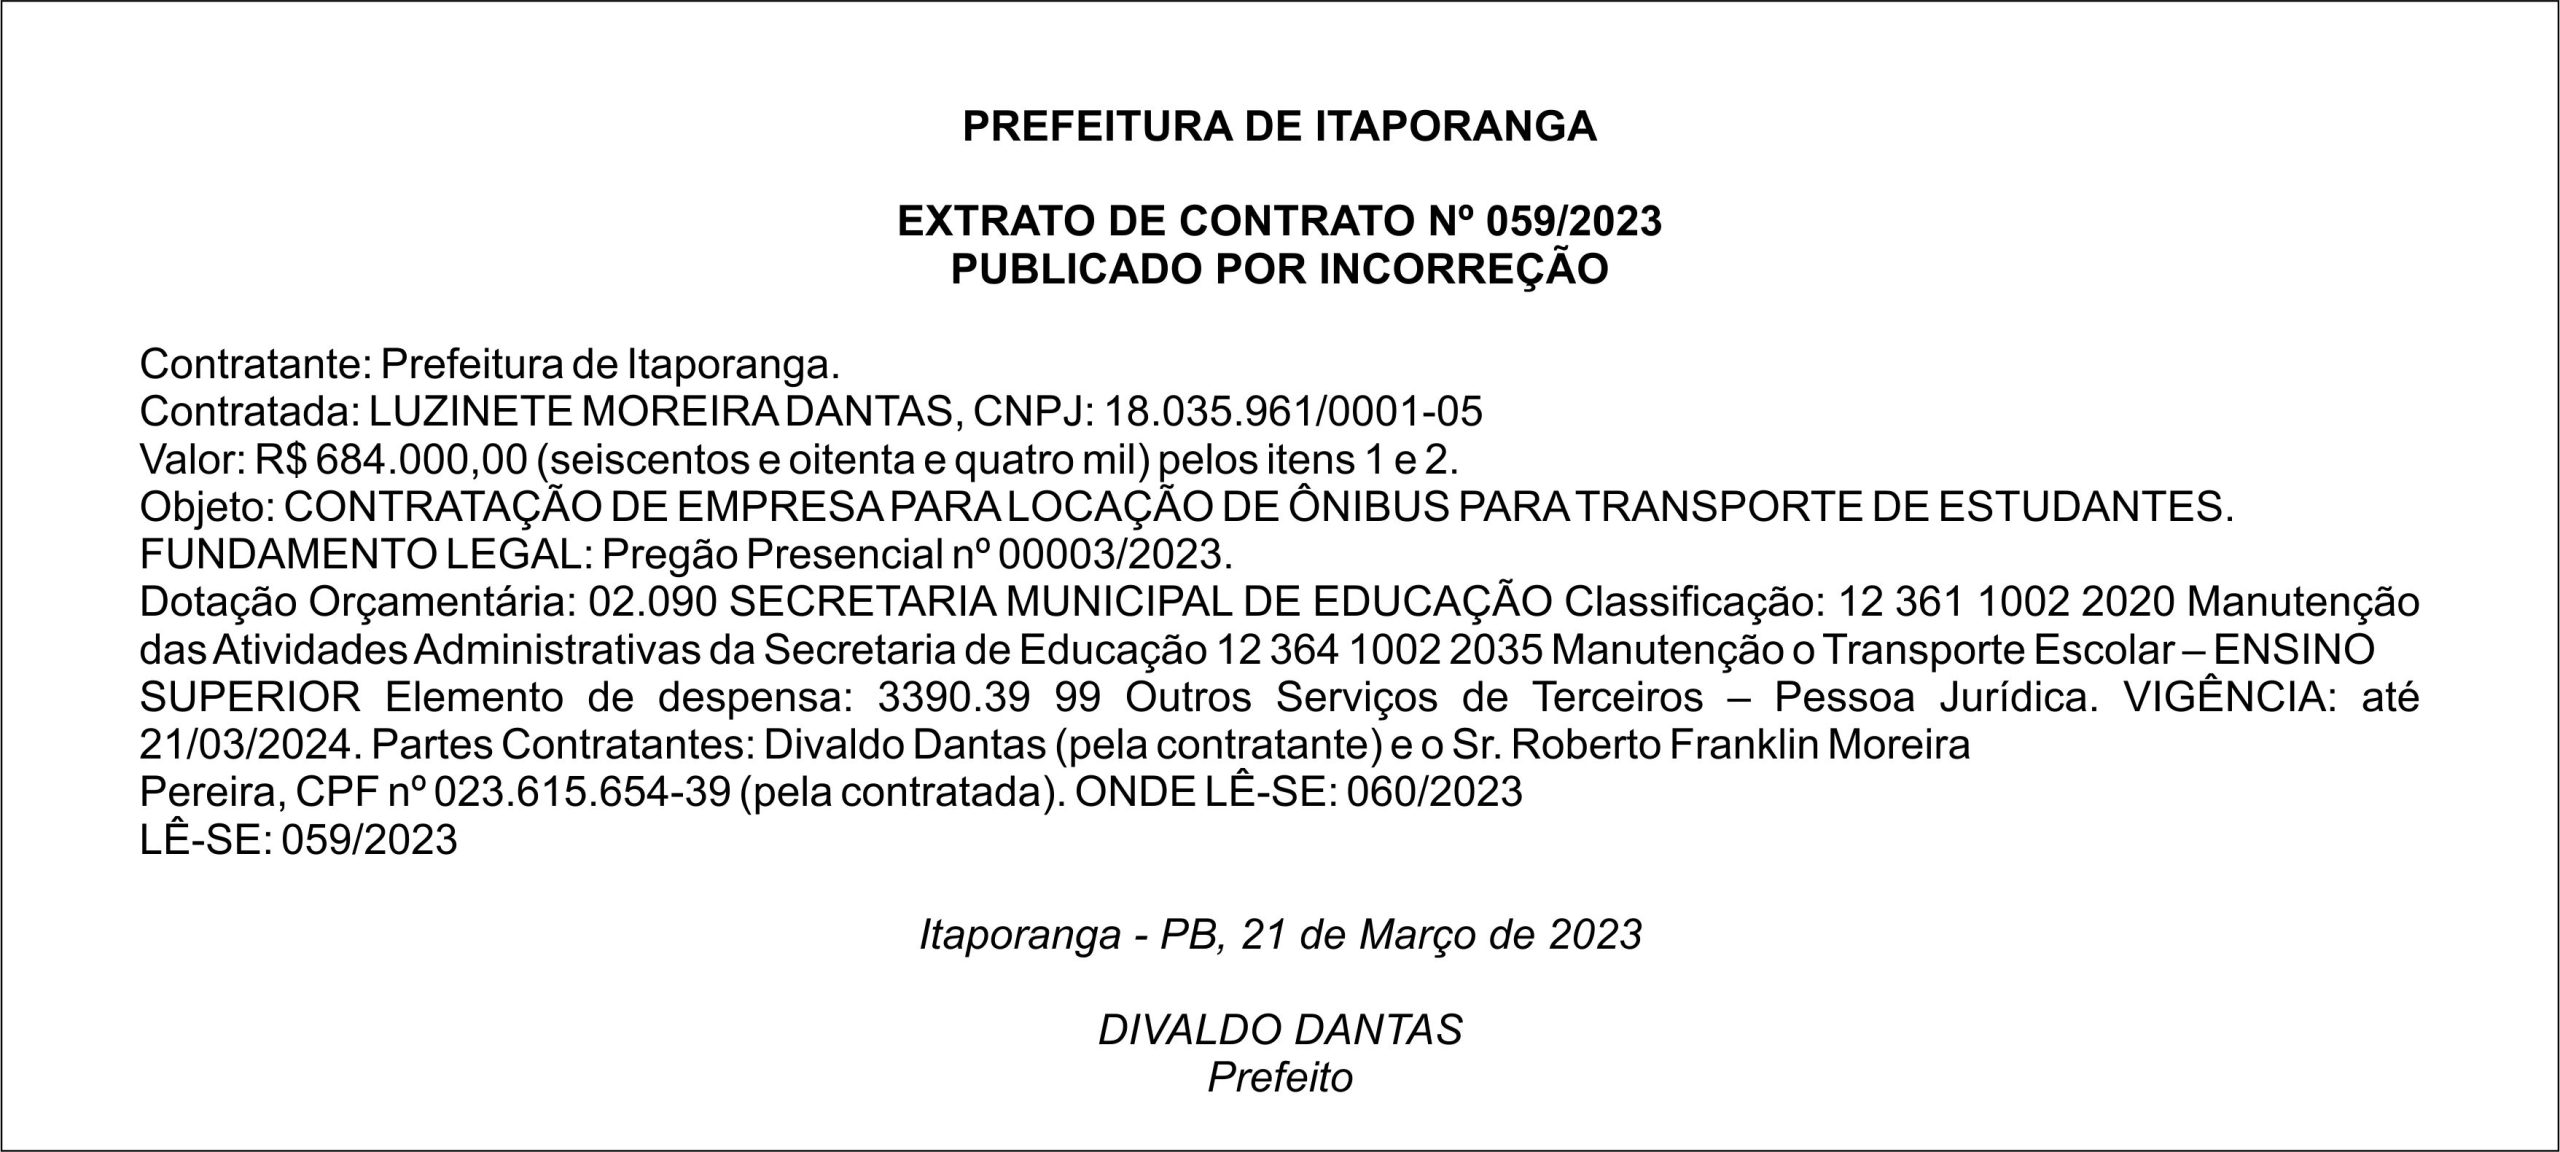 PREFEITURA MUNICIPAL DE ITAPORANGA – EXTRATO DE CONTRATO Nº 059/2023- PUBLICADO POR INCORREÇÃO